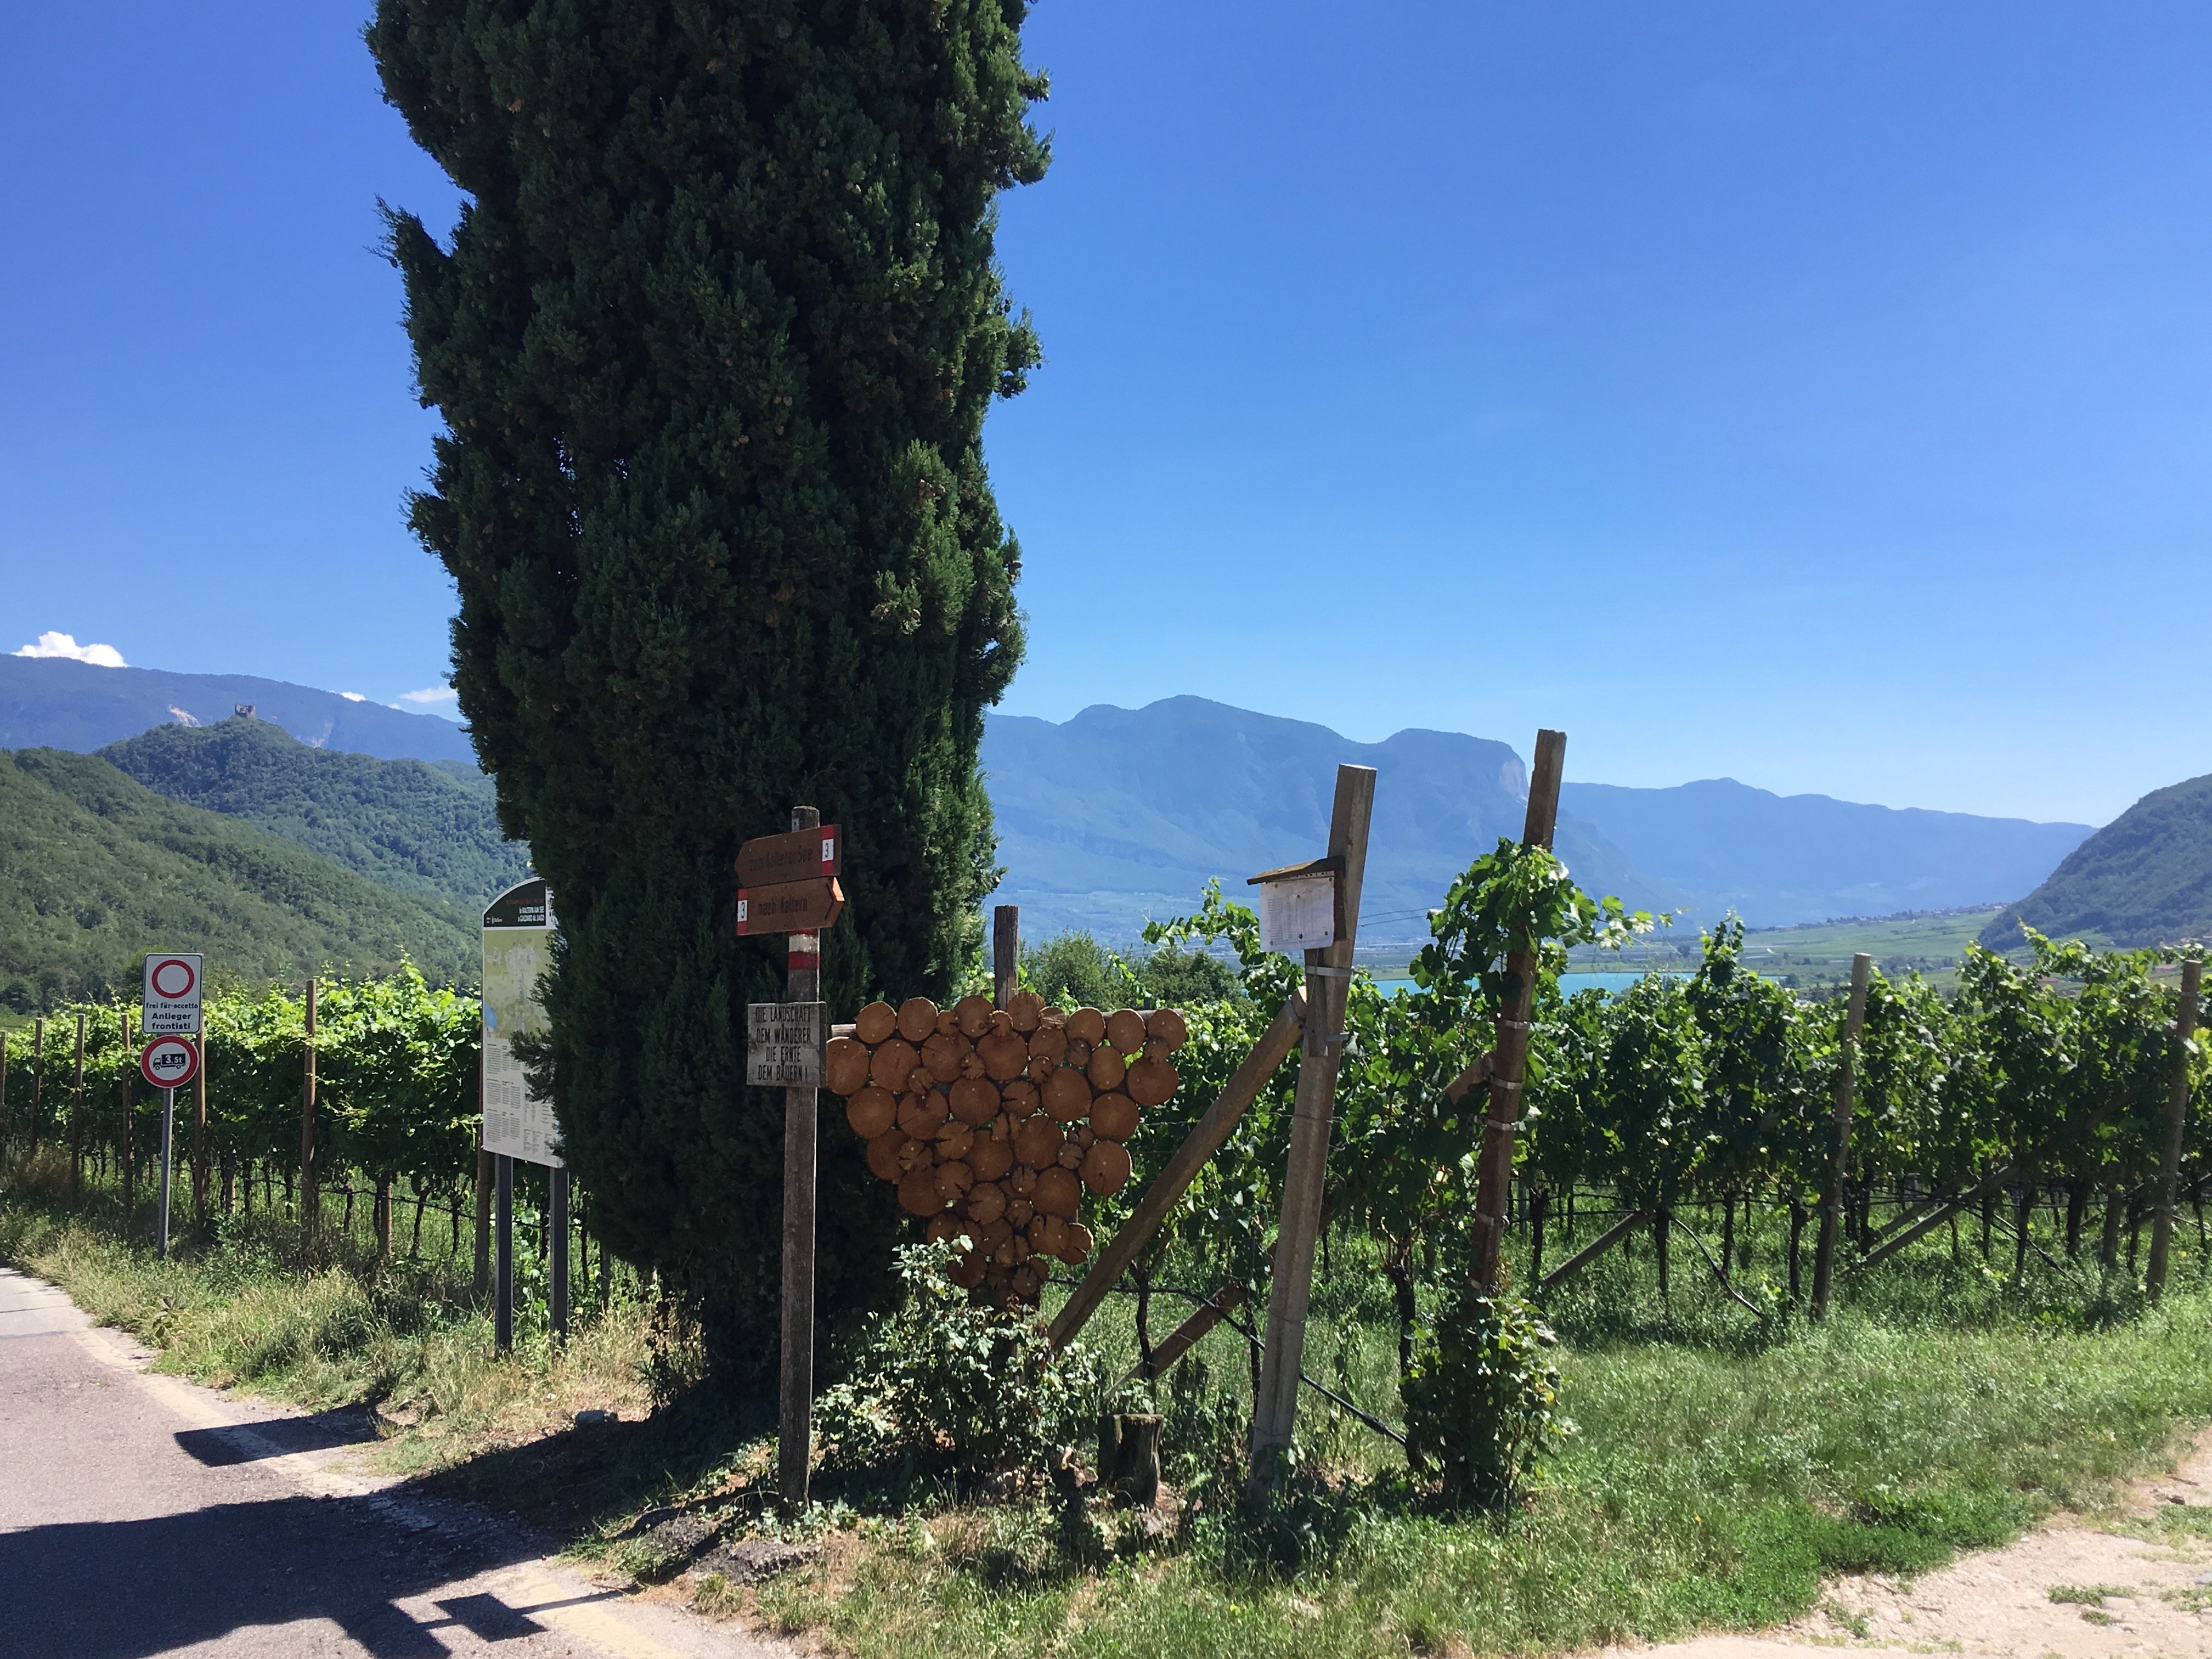 Dolomites Wine